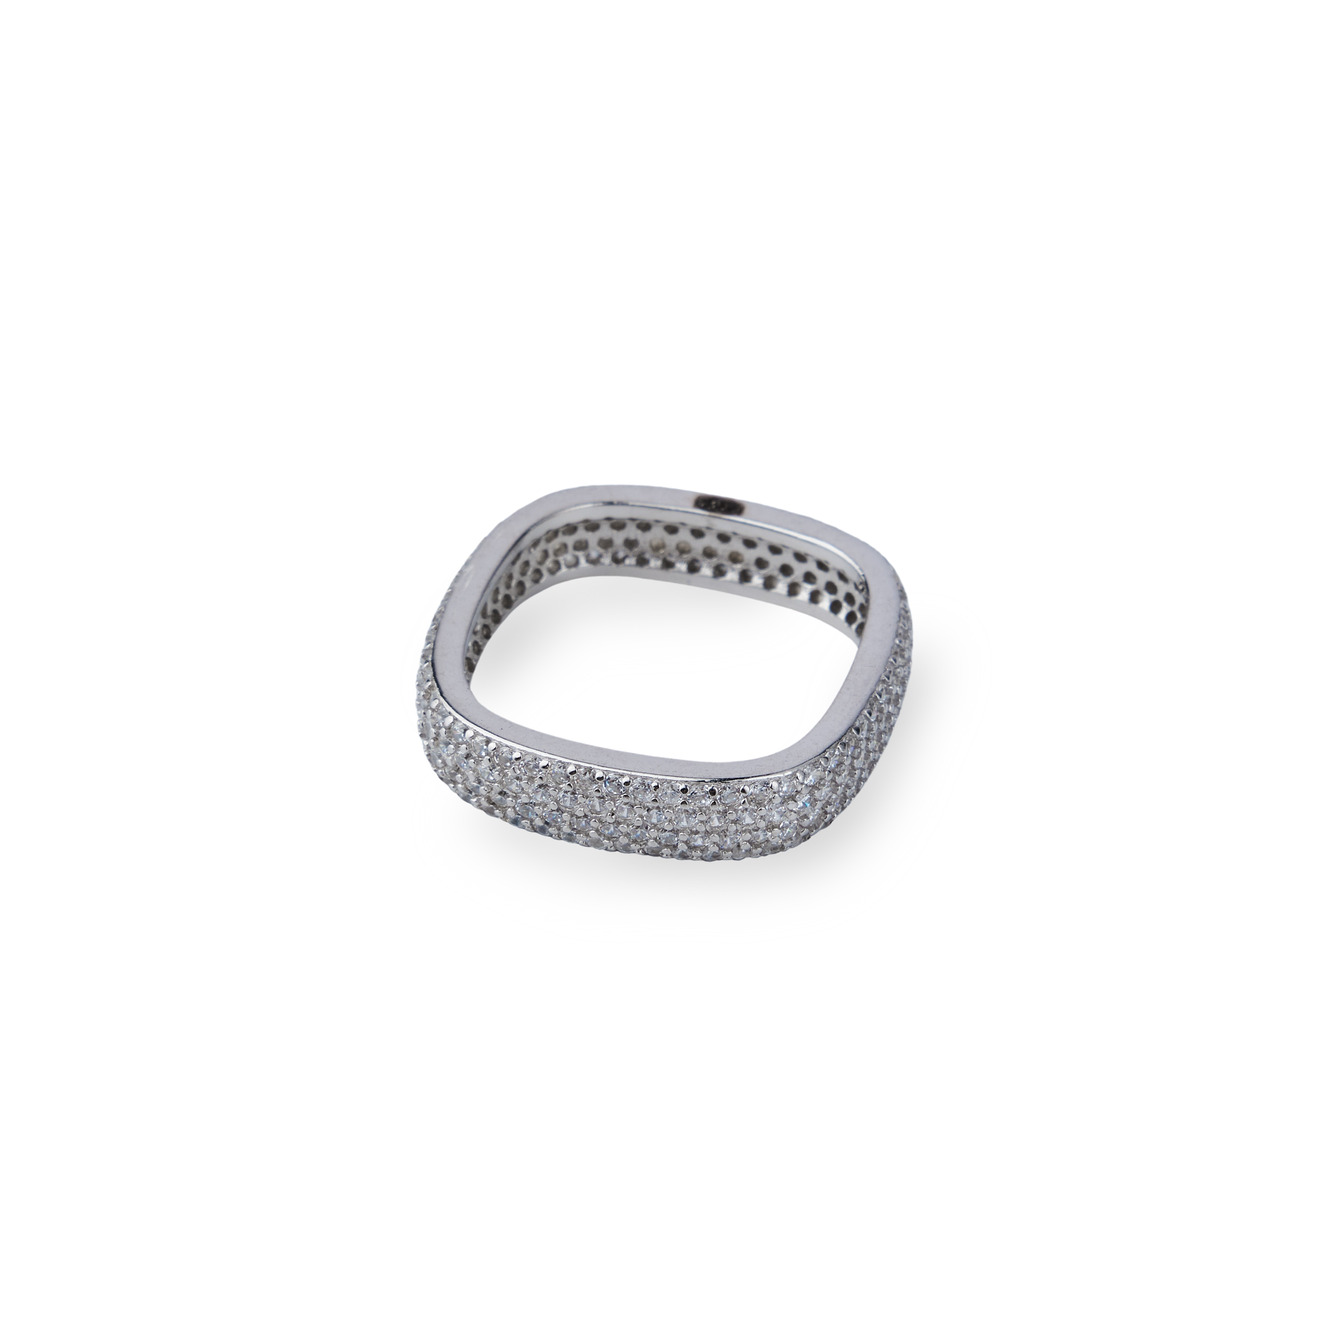 Holy Silver Серебряное квадратное кольцо из серебра с камнями holy silver серебряное кольцо с тремя крупными голубыми кристаллами